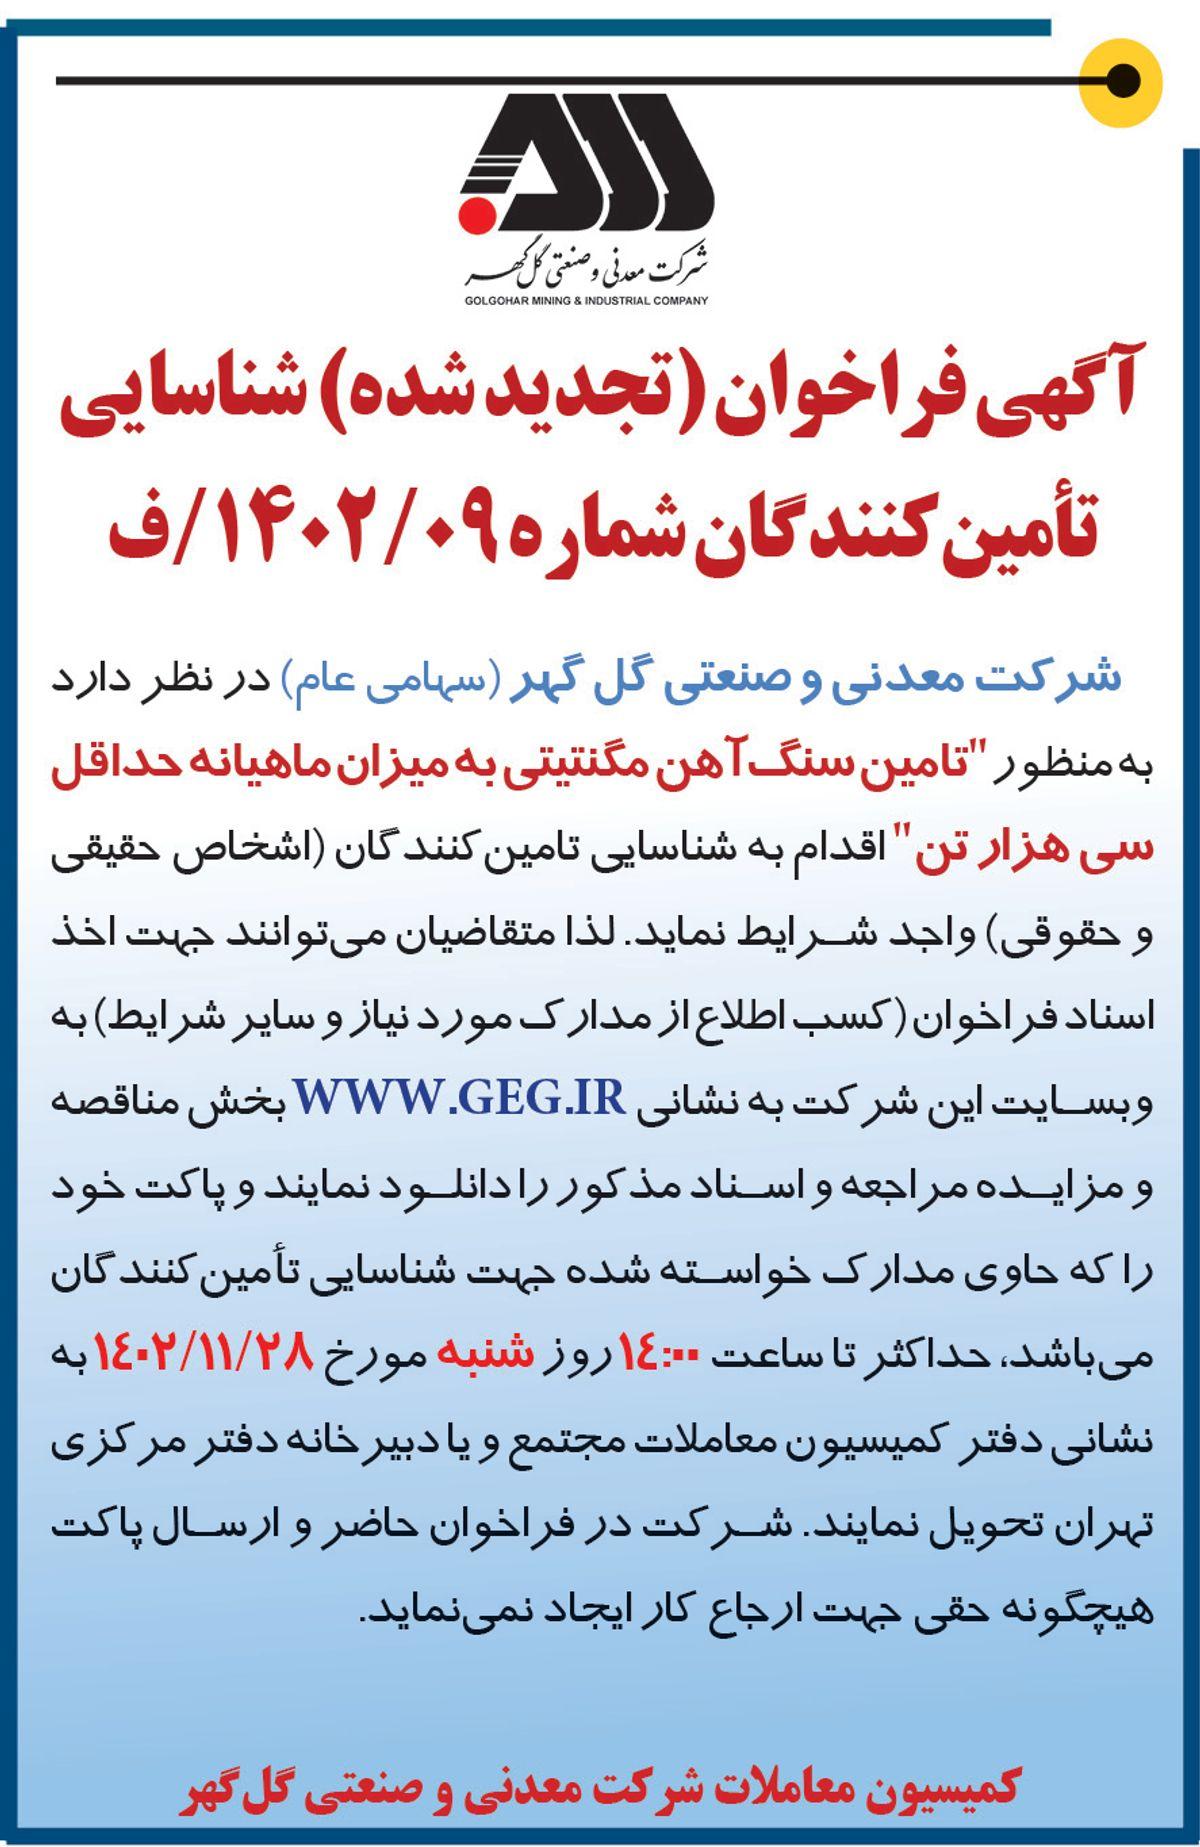 آگهی فراخوا تجدید شده تامین سنگ آهن مگنتیتی به میزان ماهیانه حداقل سی هزار تن شرکت گل گهر